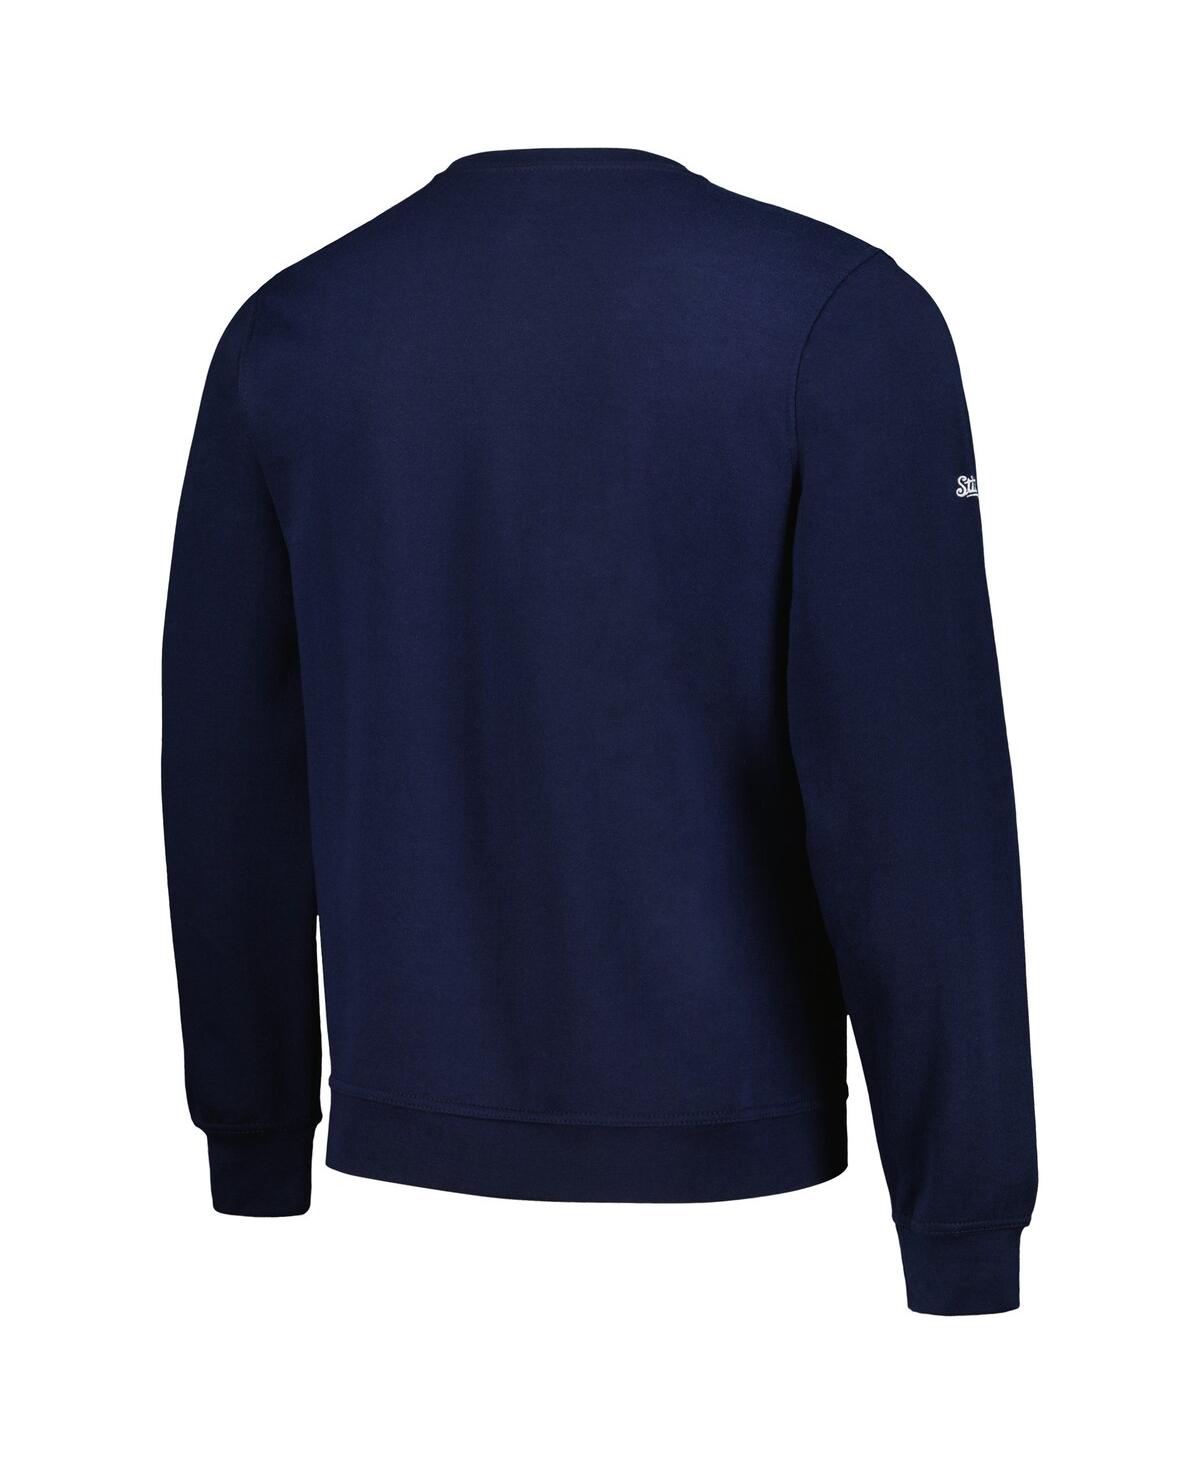 Shop Stitches Men's  Navy Detroit Tigers Pullover Sweatshirt